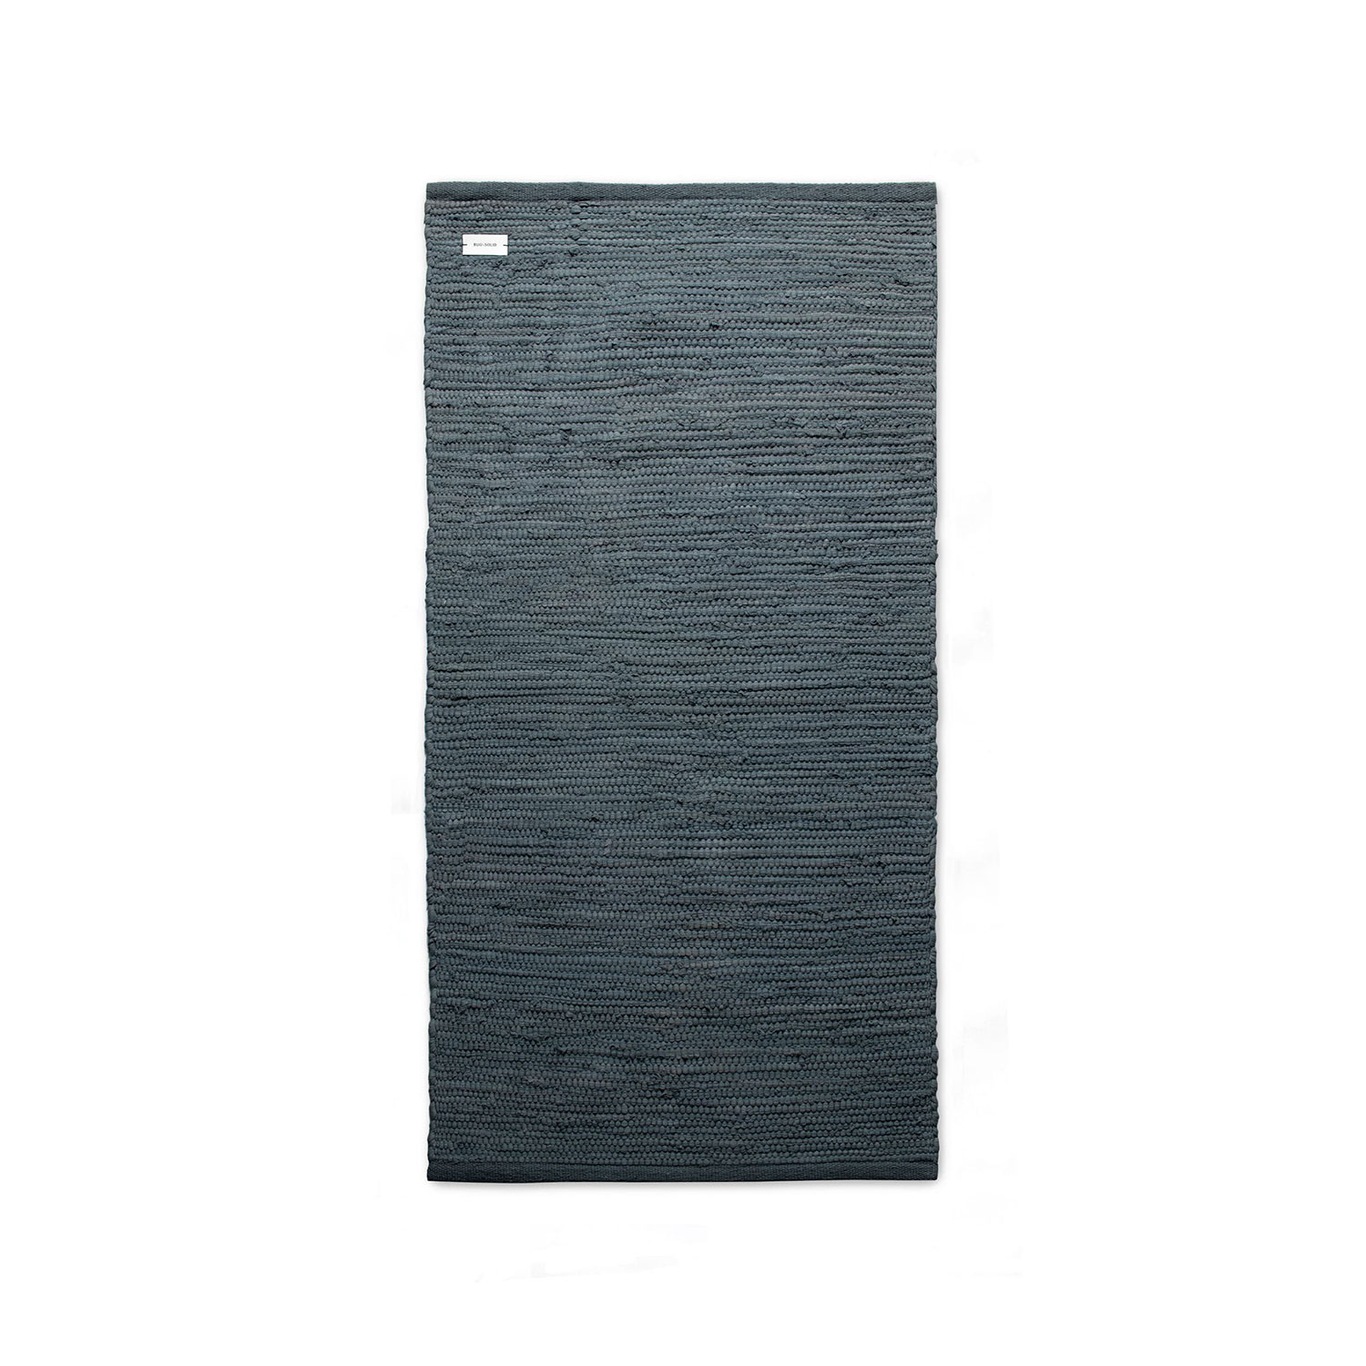 Cotton Teppich Steel Grey, 60x90 cm